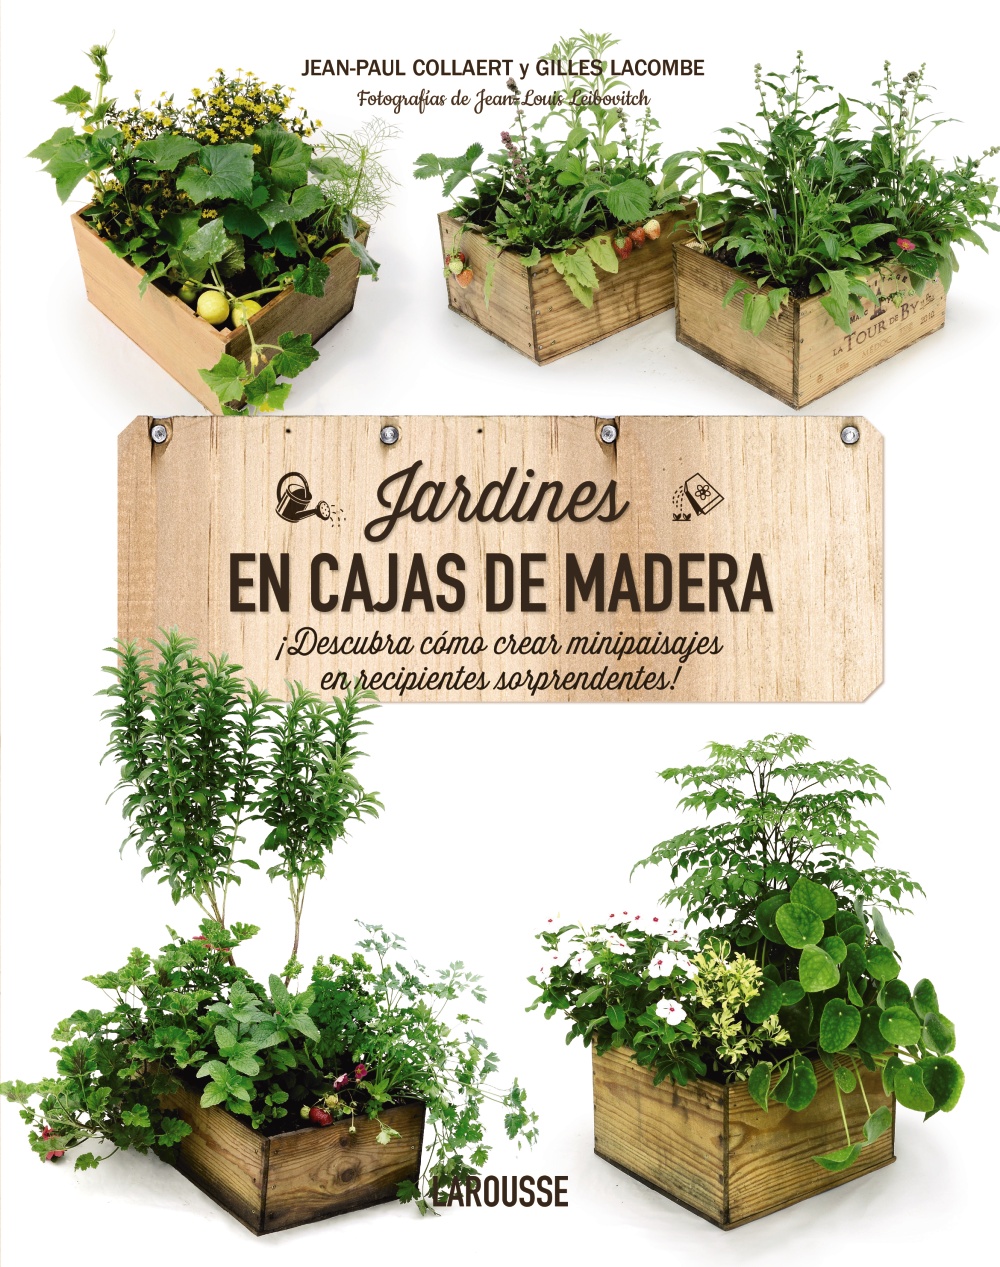 Jardines en cajas de madera "Descubra como crear minipaisajes en recipientes sorprendentes"